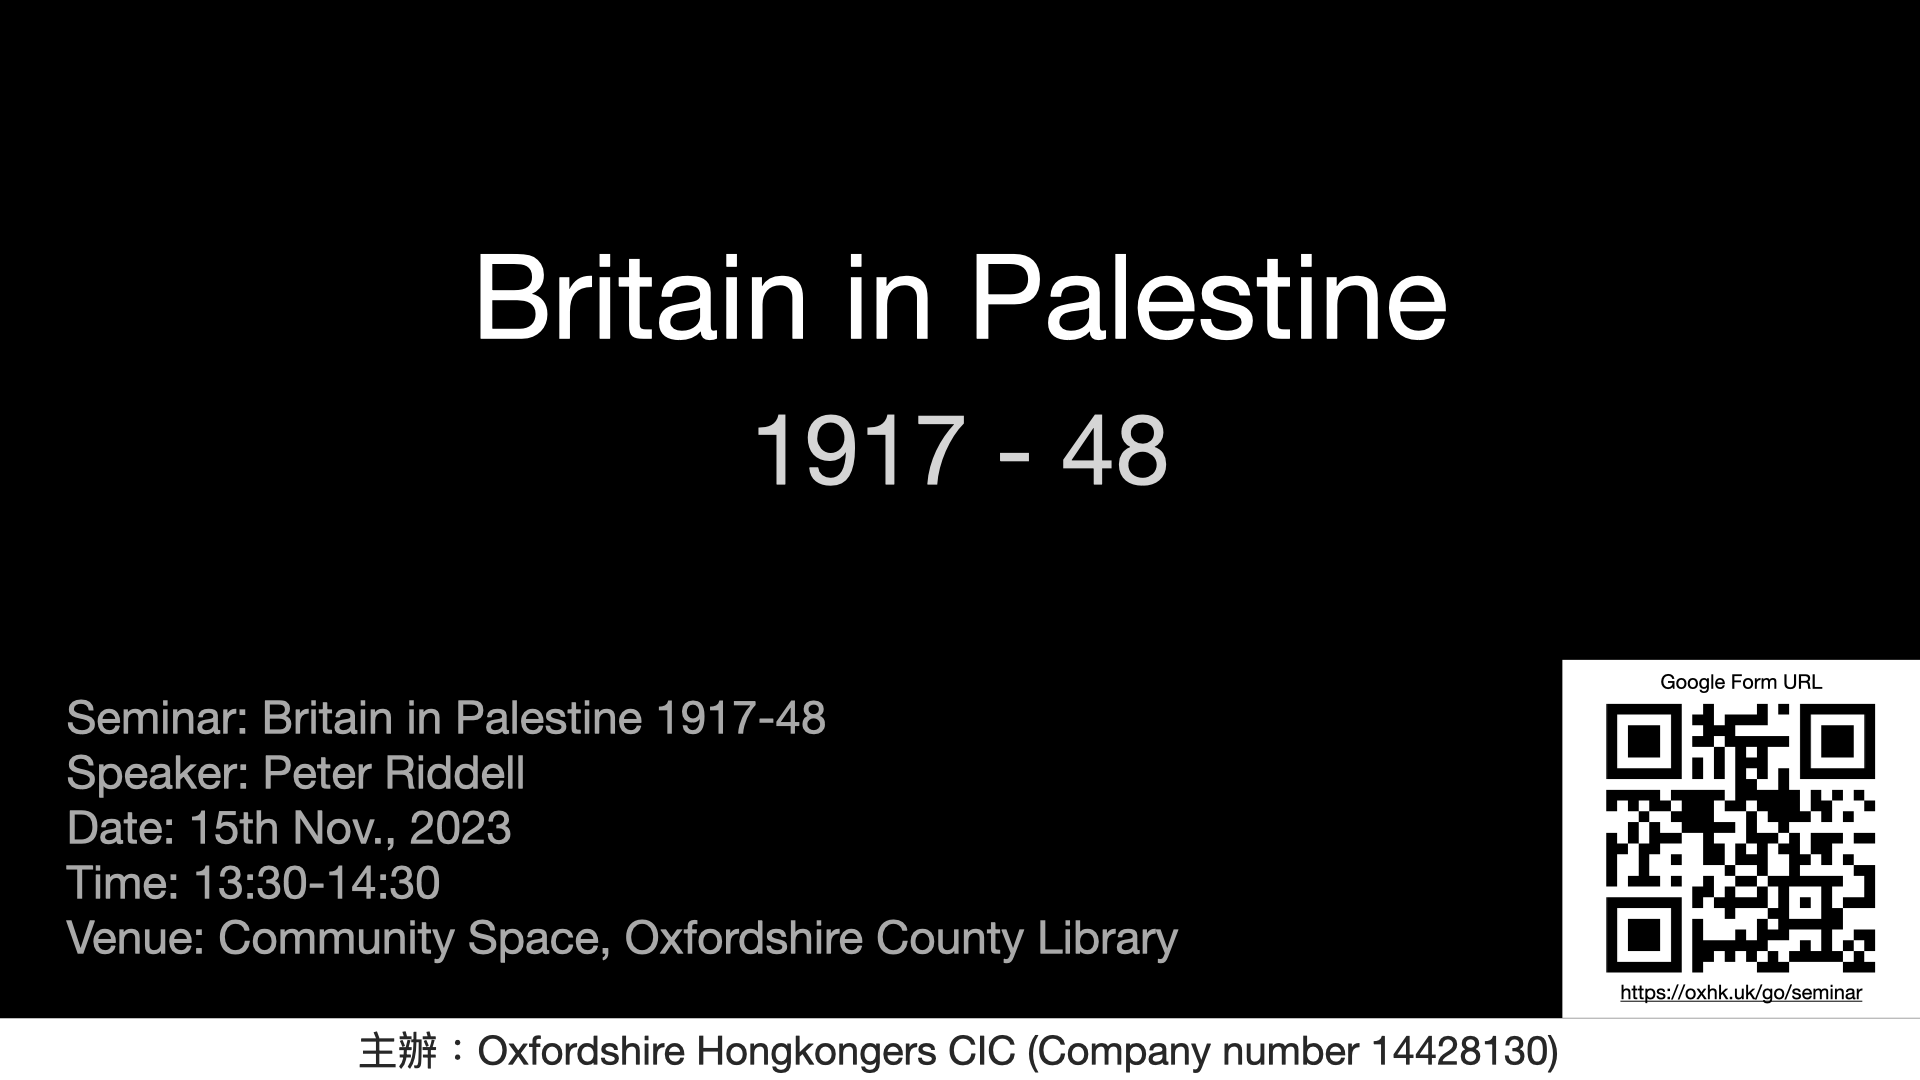 Seminar: Britain in Palestine 1917-1948 on 15th of November, 2023